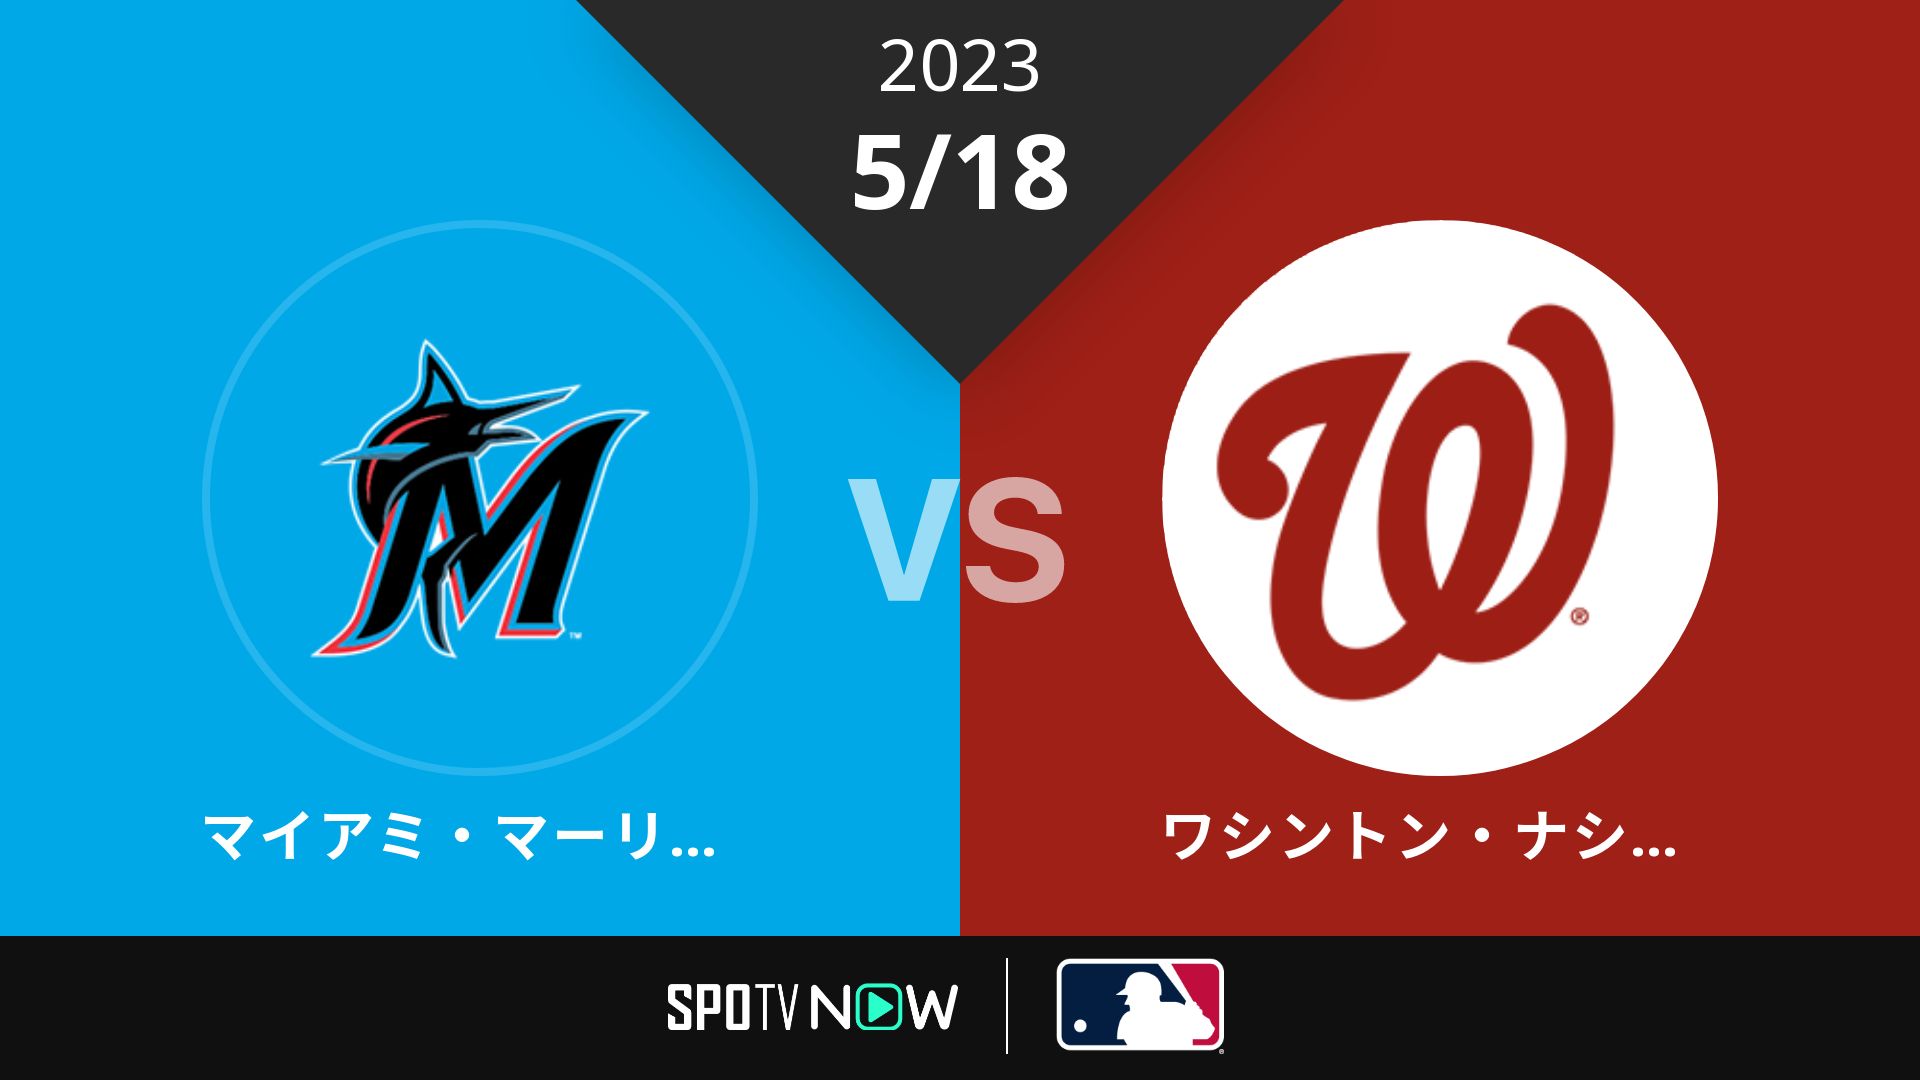 2023/5/18 マーリンズ vs ナショナルズ [MLB]